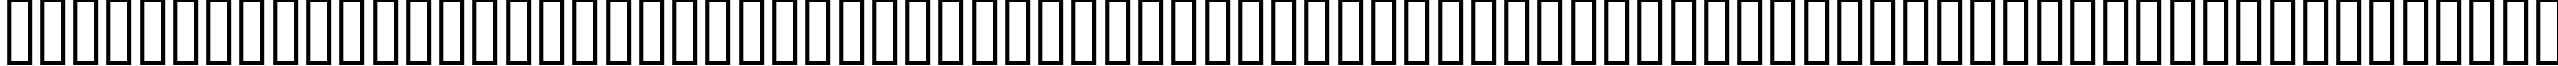 Пример написания английского алфавита шрифтом ELEGANCE